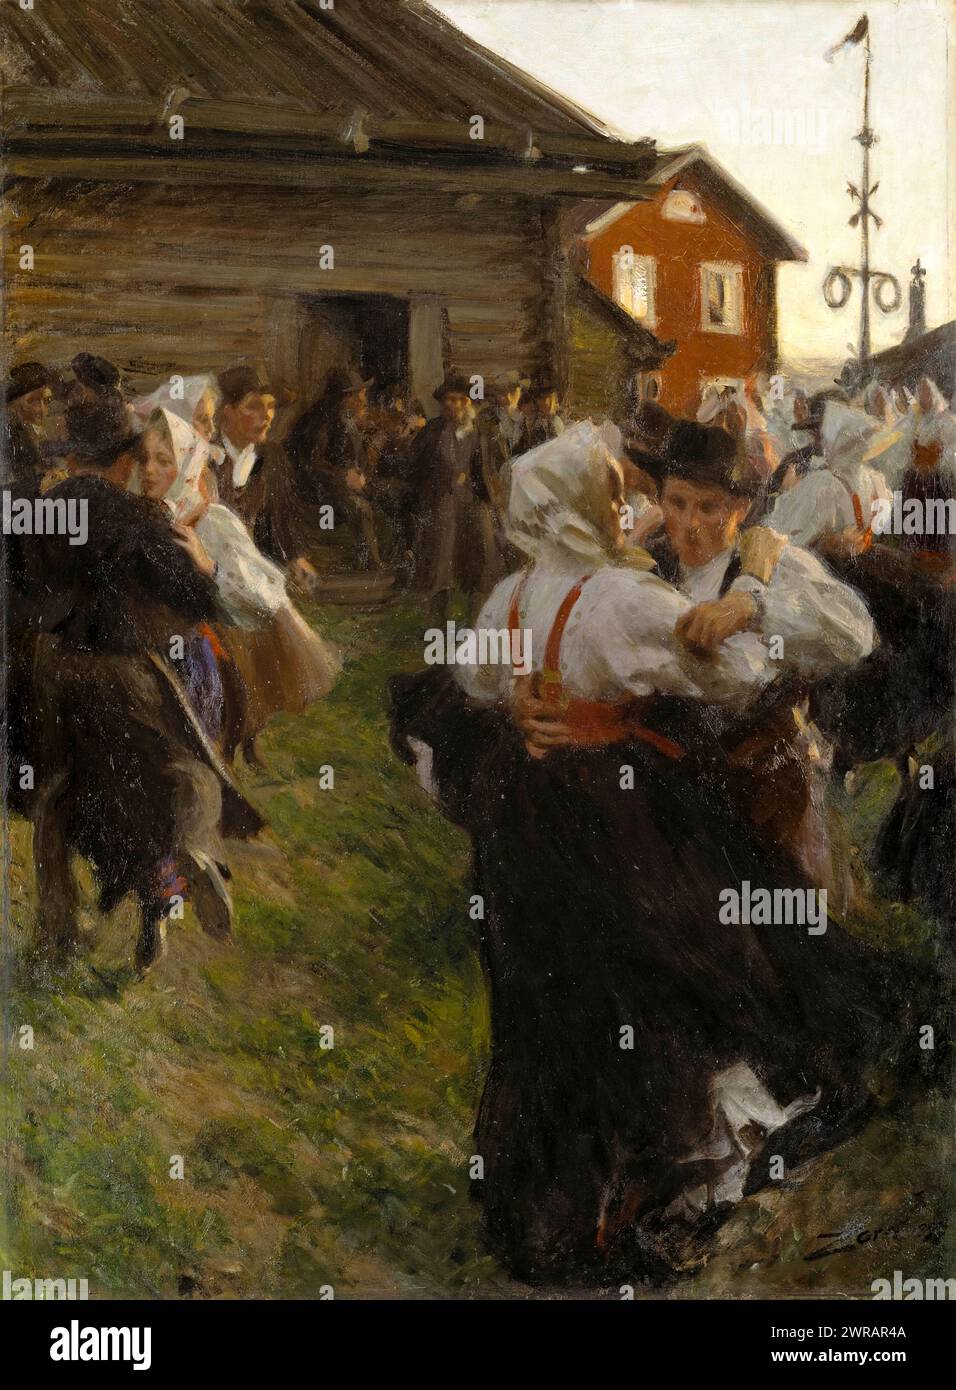 Danse du milieu de l'été par l'artiste suédois Anders Zorn (1860-1920) peint en 1897.Un classique de l'histoire de l'art suédois montrant la danse folklorique traditionnelle dans la campagne de Dalarna dans la lumière du soir d'été prolongée. Crédit : Nationalmuseum, Suède / Universal Art Archive Banque D'Images